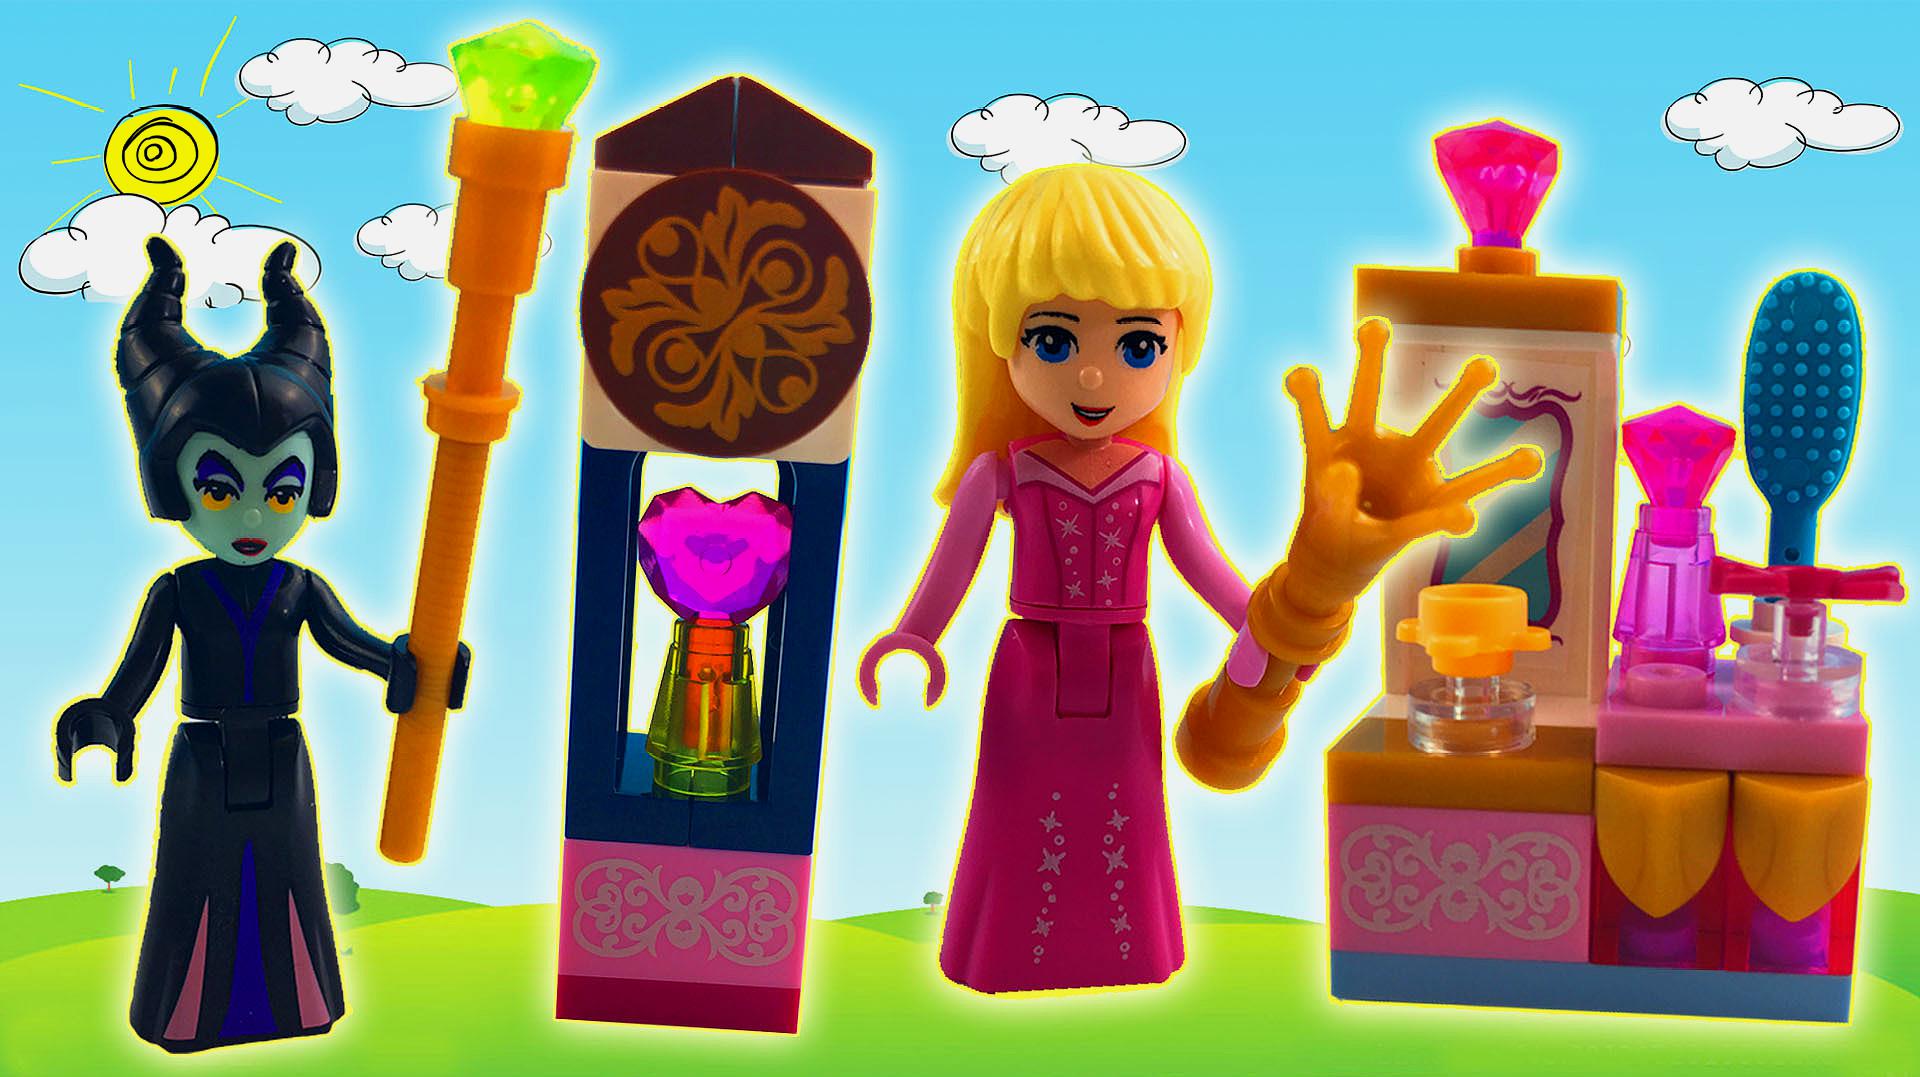 "晓童玩具"之早教视频:迪士尼公主乐高积木玩具,拼装